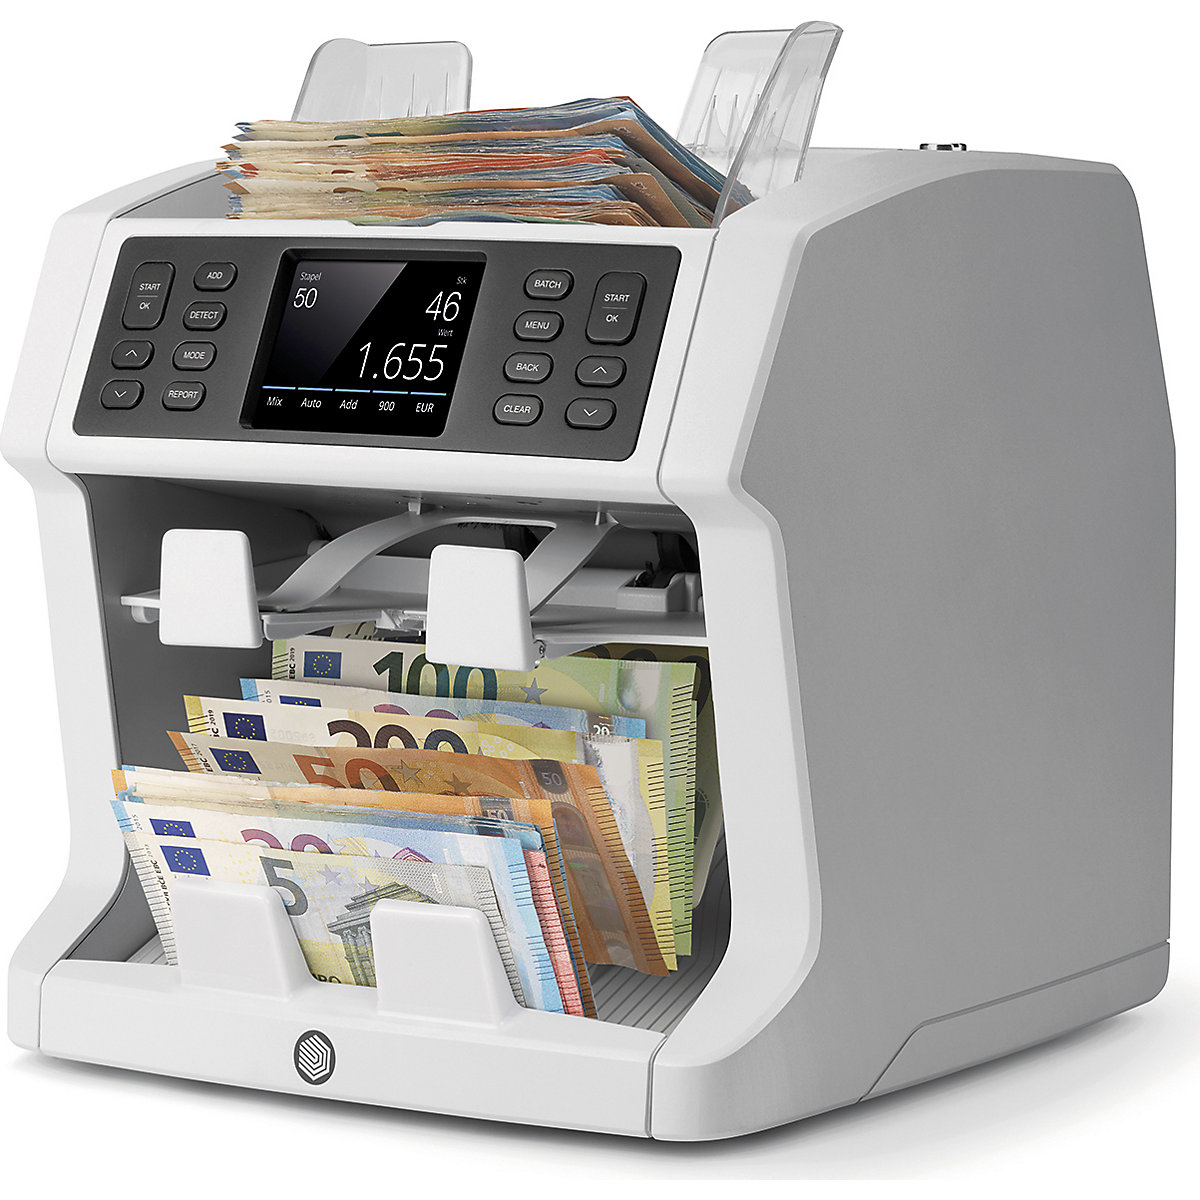 Liczarka banknotów, liczenie nieposortowanych banknotów, z funkcją sortowania - Safescan